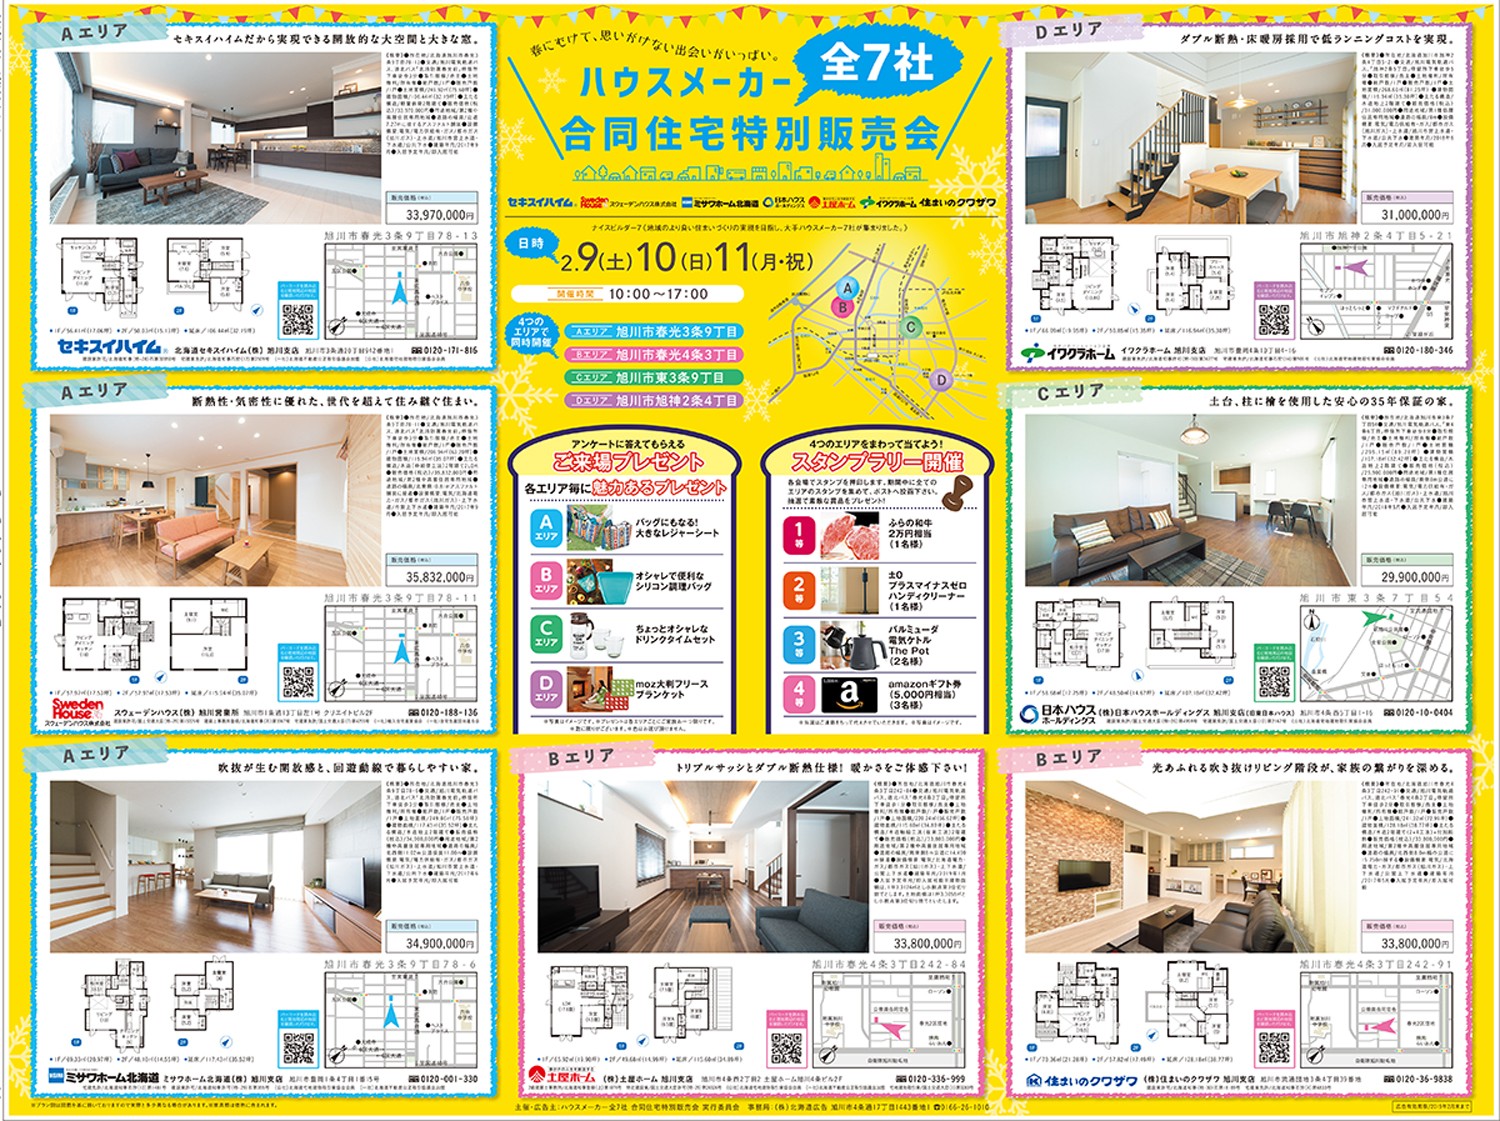 ハウスメーカー全7社 合同住宅特別販売会 旭川市 イベント ライナーウェブ